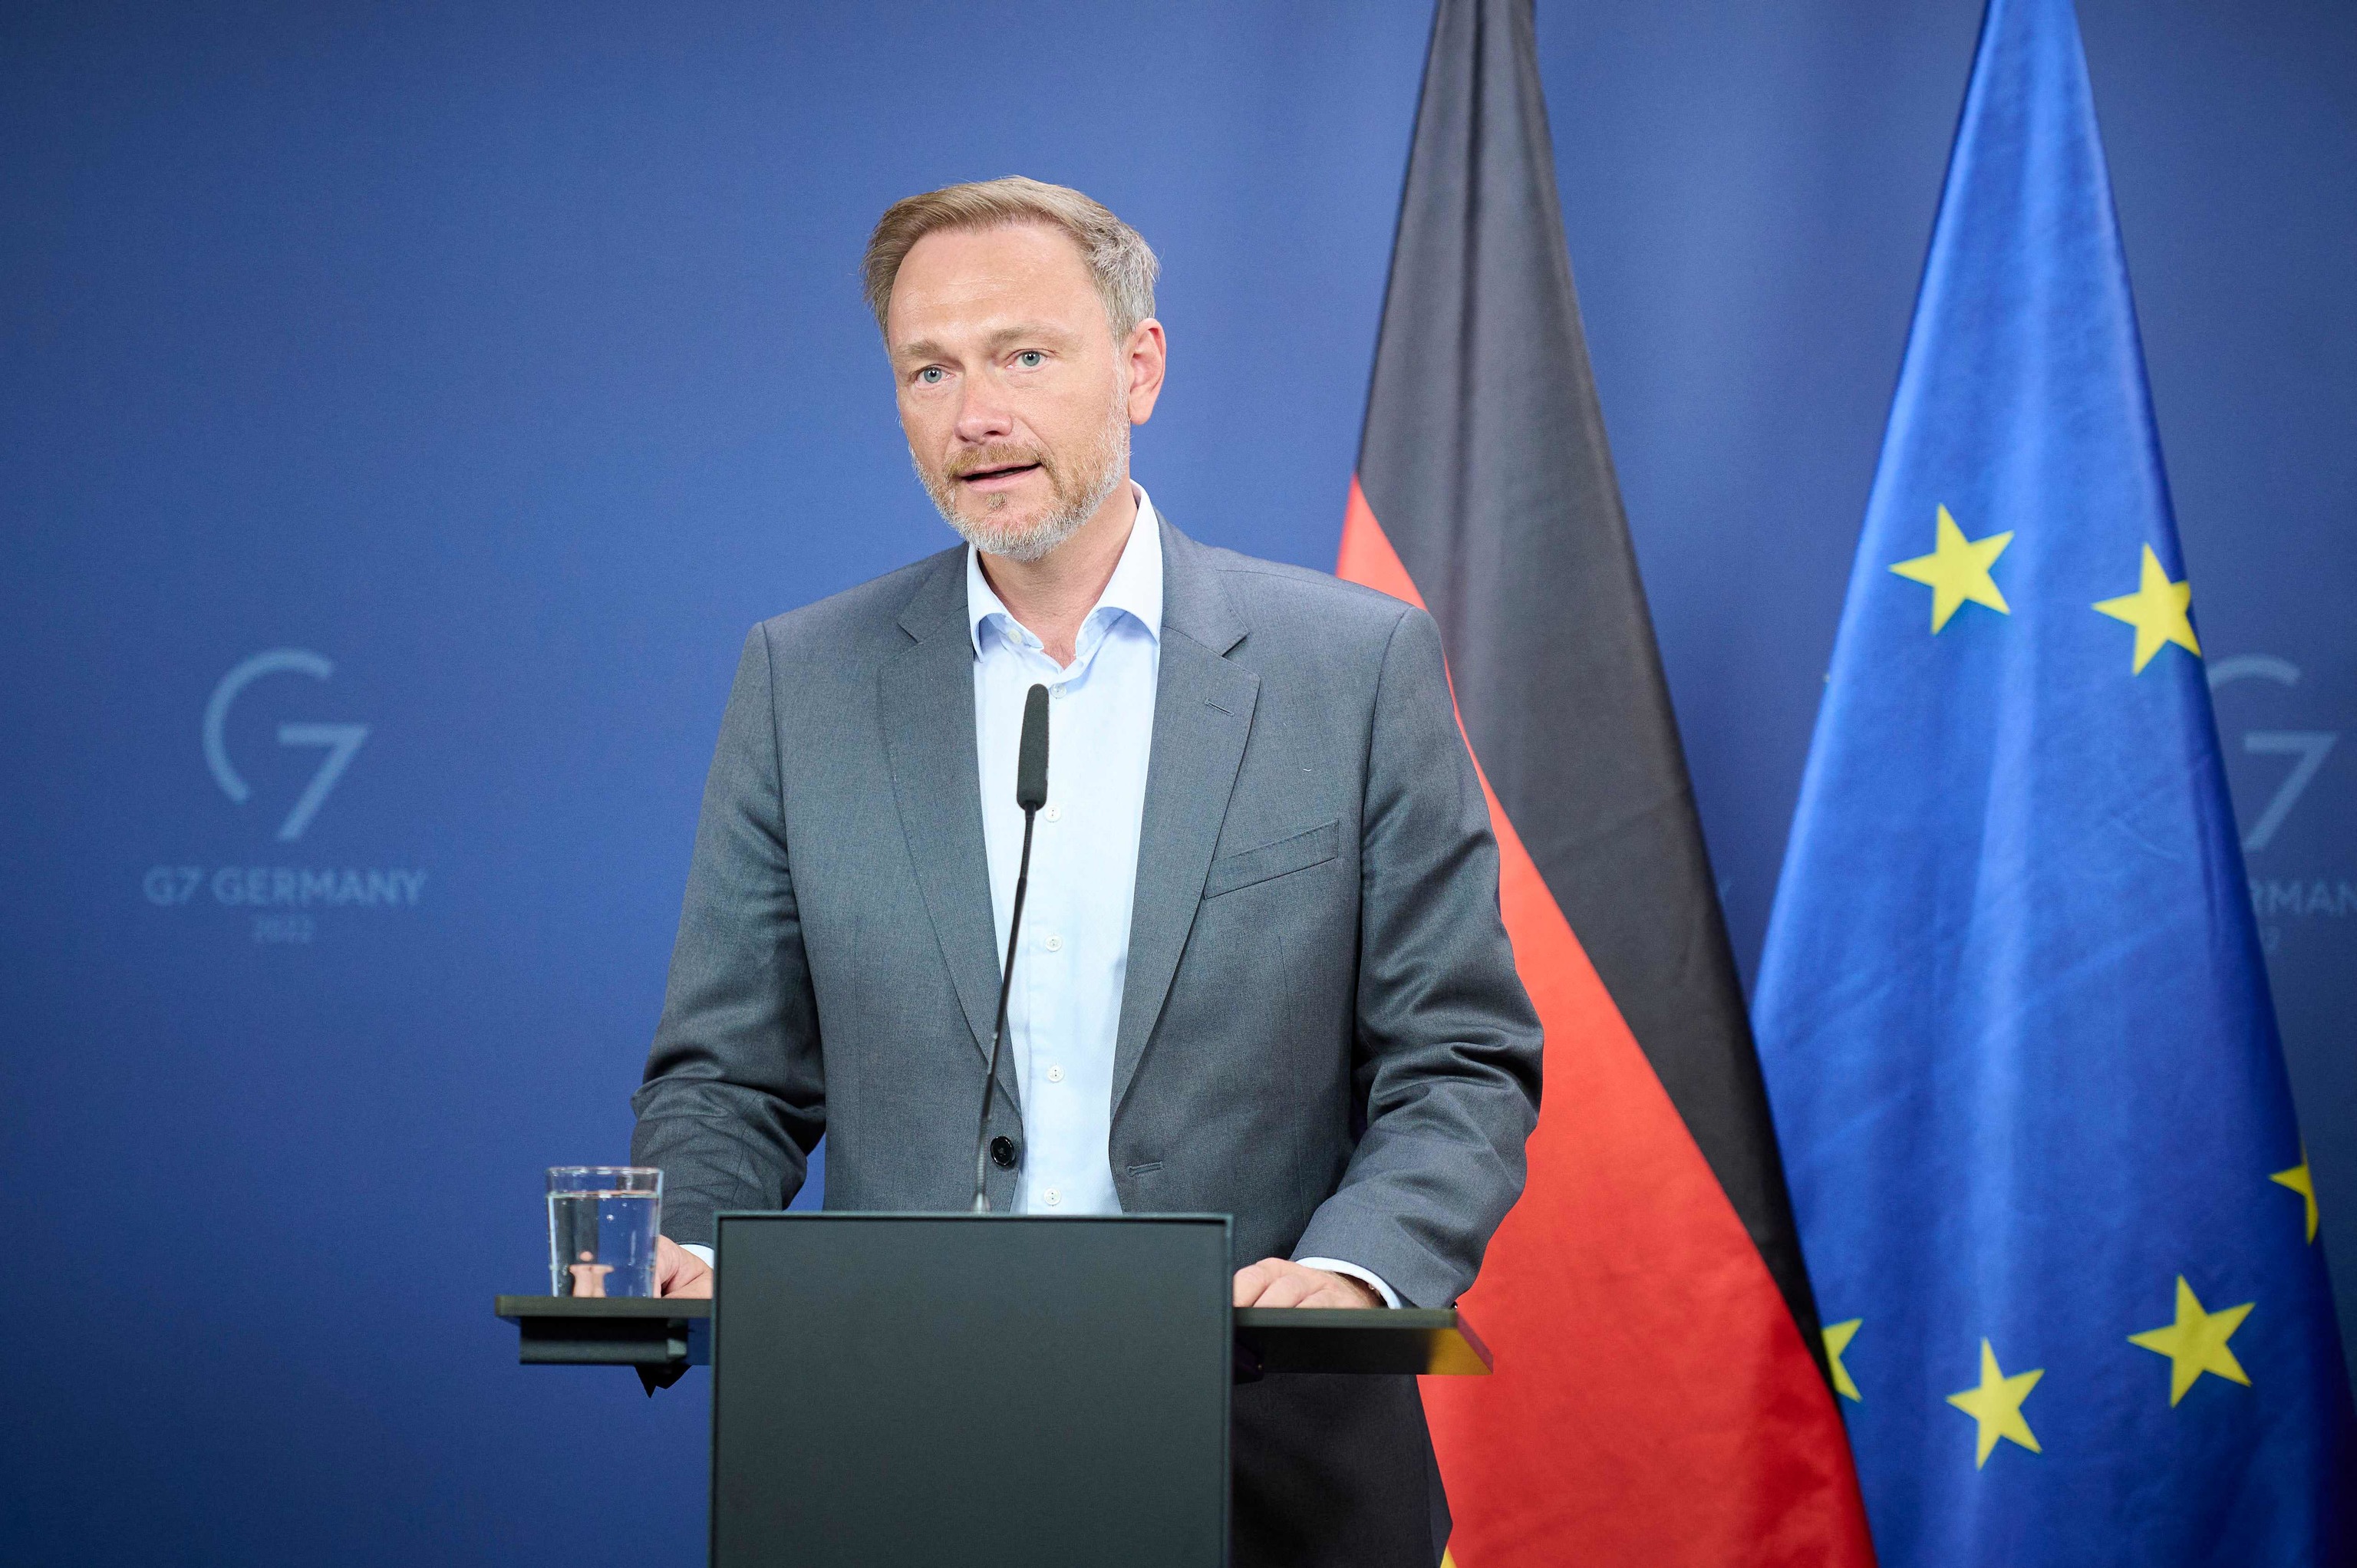 El ministro de Finanzas alemán pide dejar de usar gas para generar electricidad